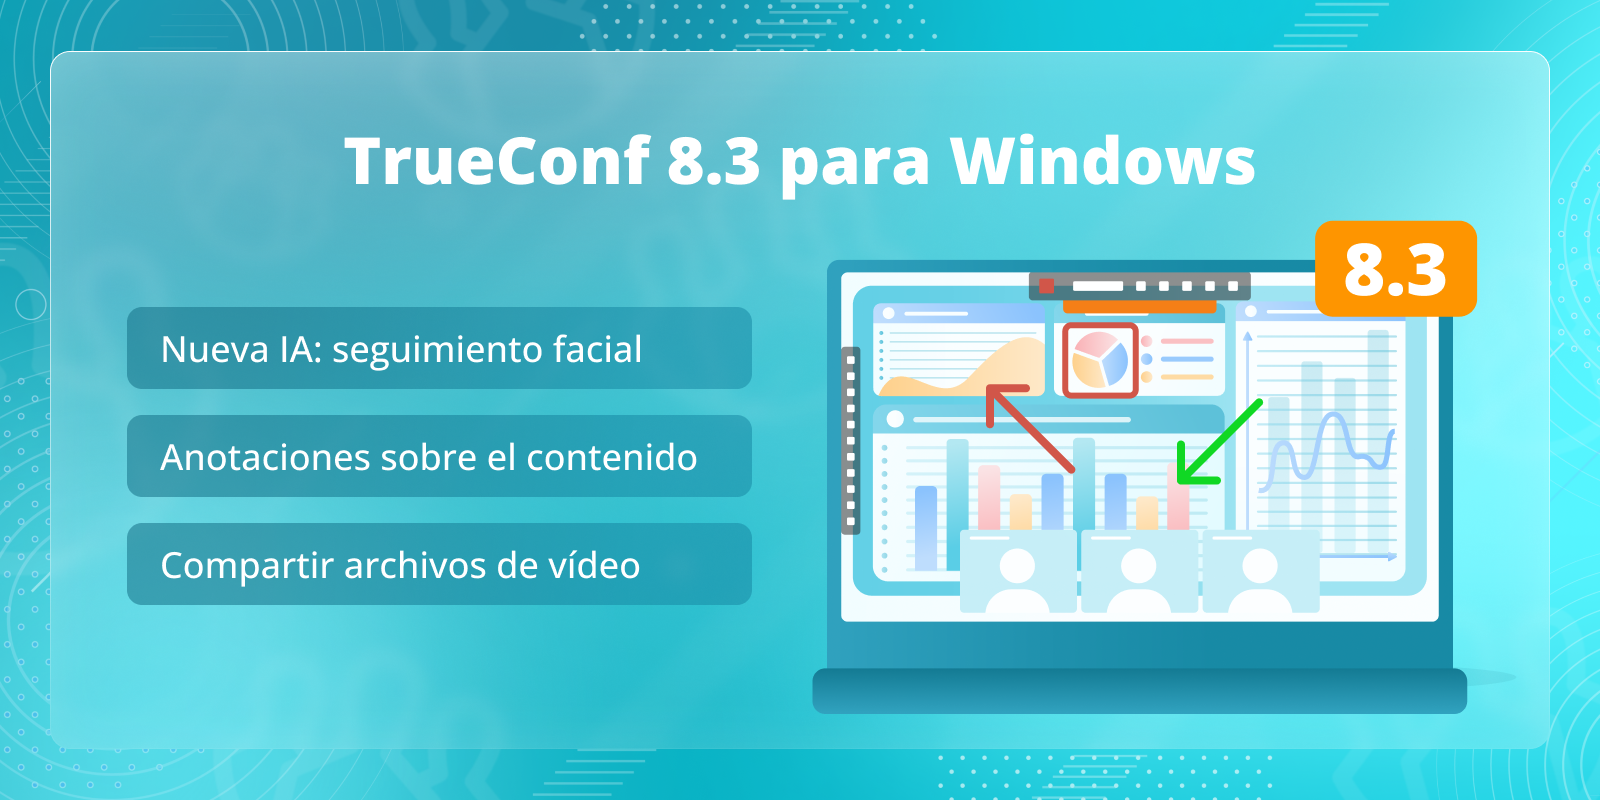 TrueConf 8.3 para Windows: Nueva función basada en IA, anotaciones sobre el contenido y compartir archivos de video 1